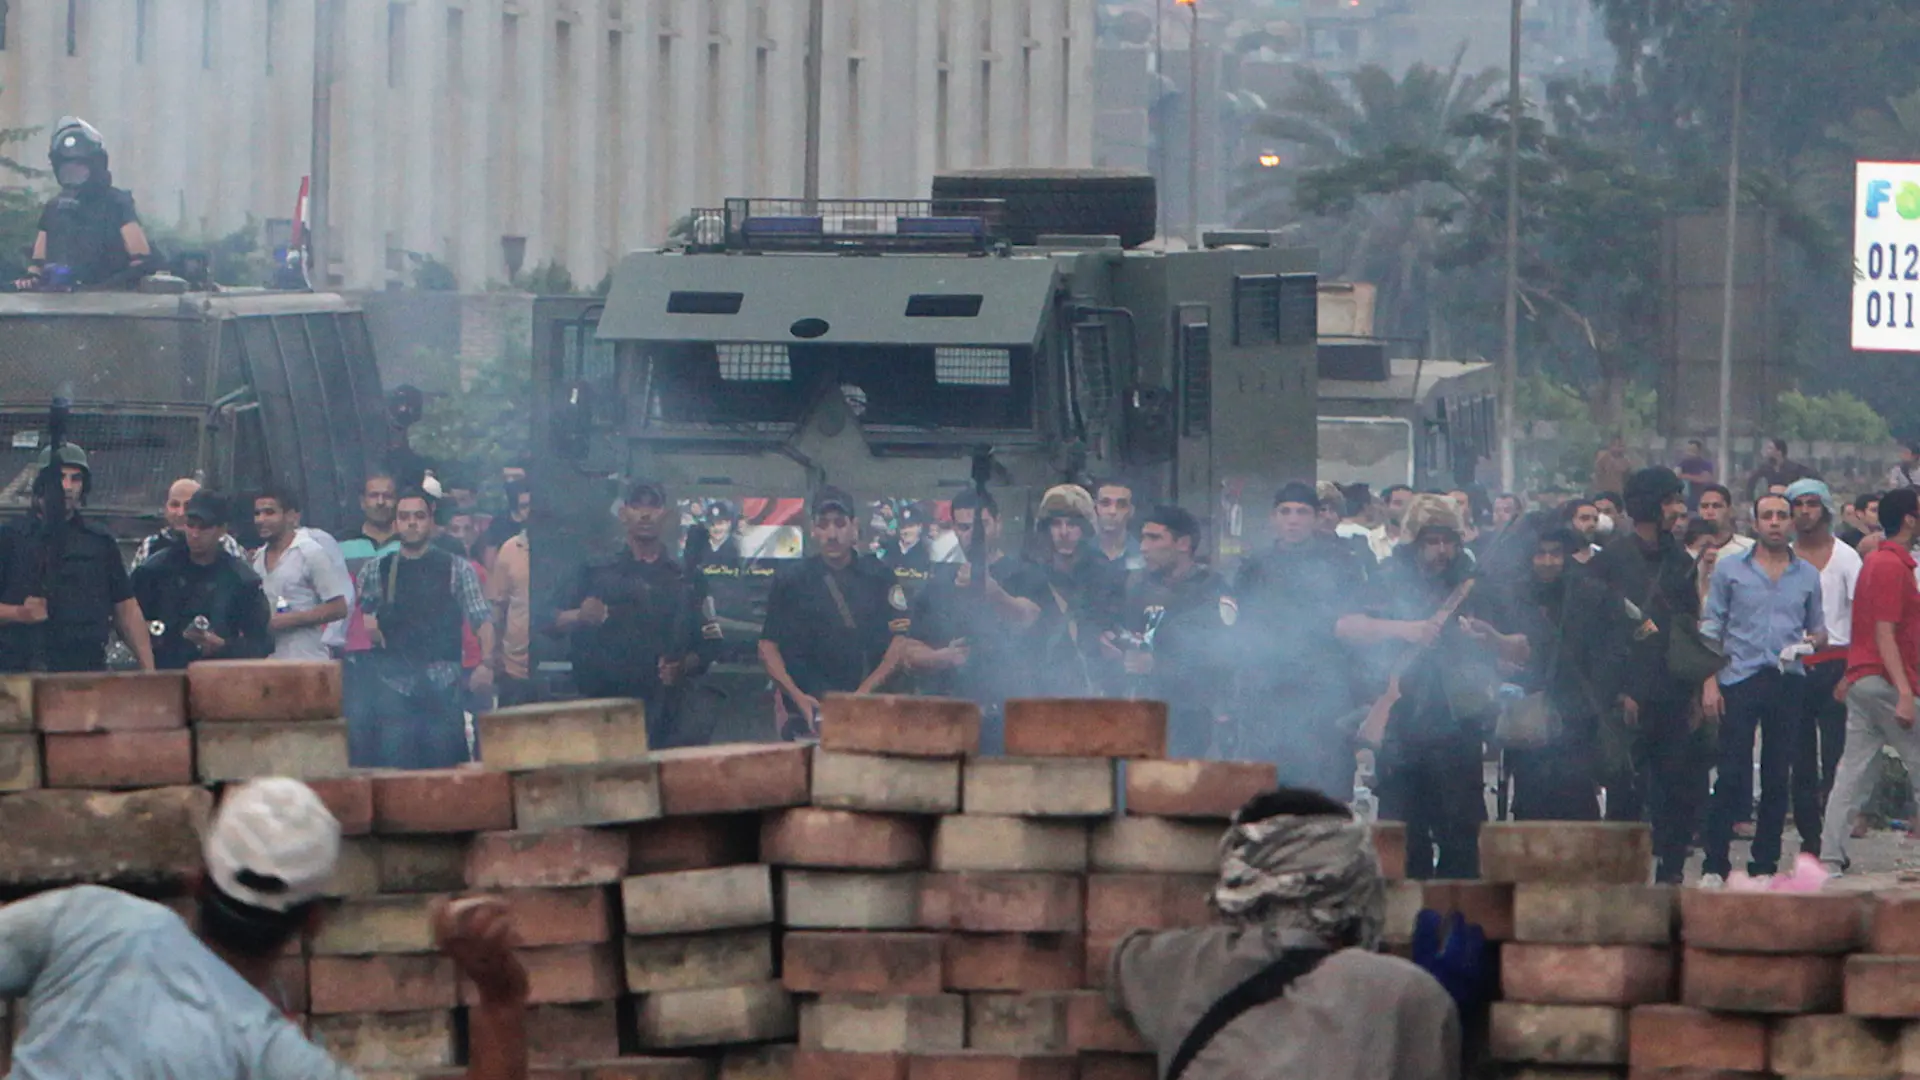 Vidéo : La France complice de la répression égyptienne de 2013 selon Amnesty International